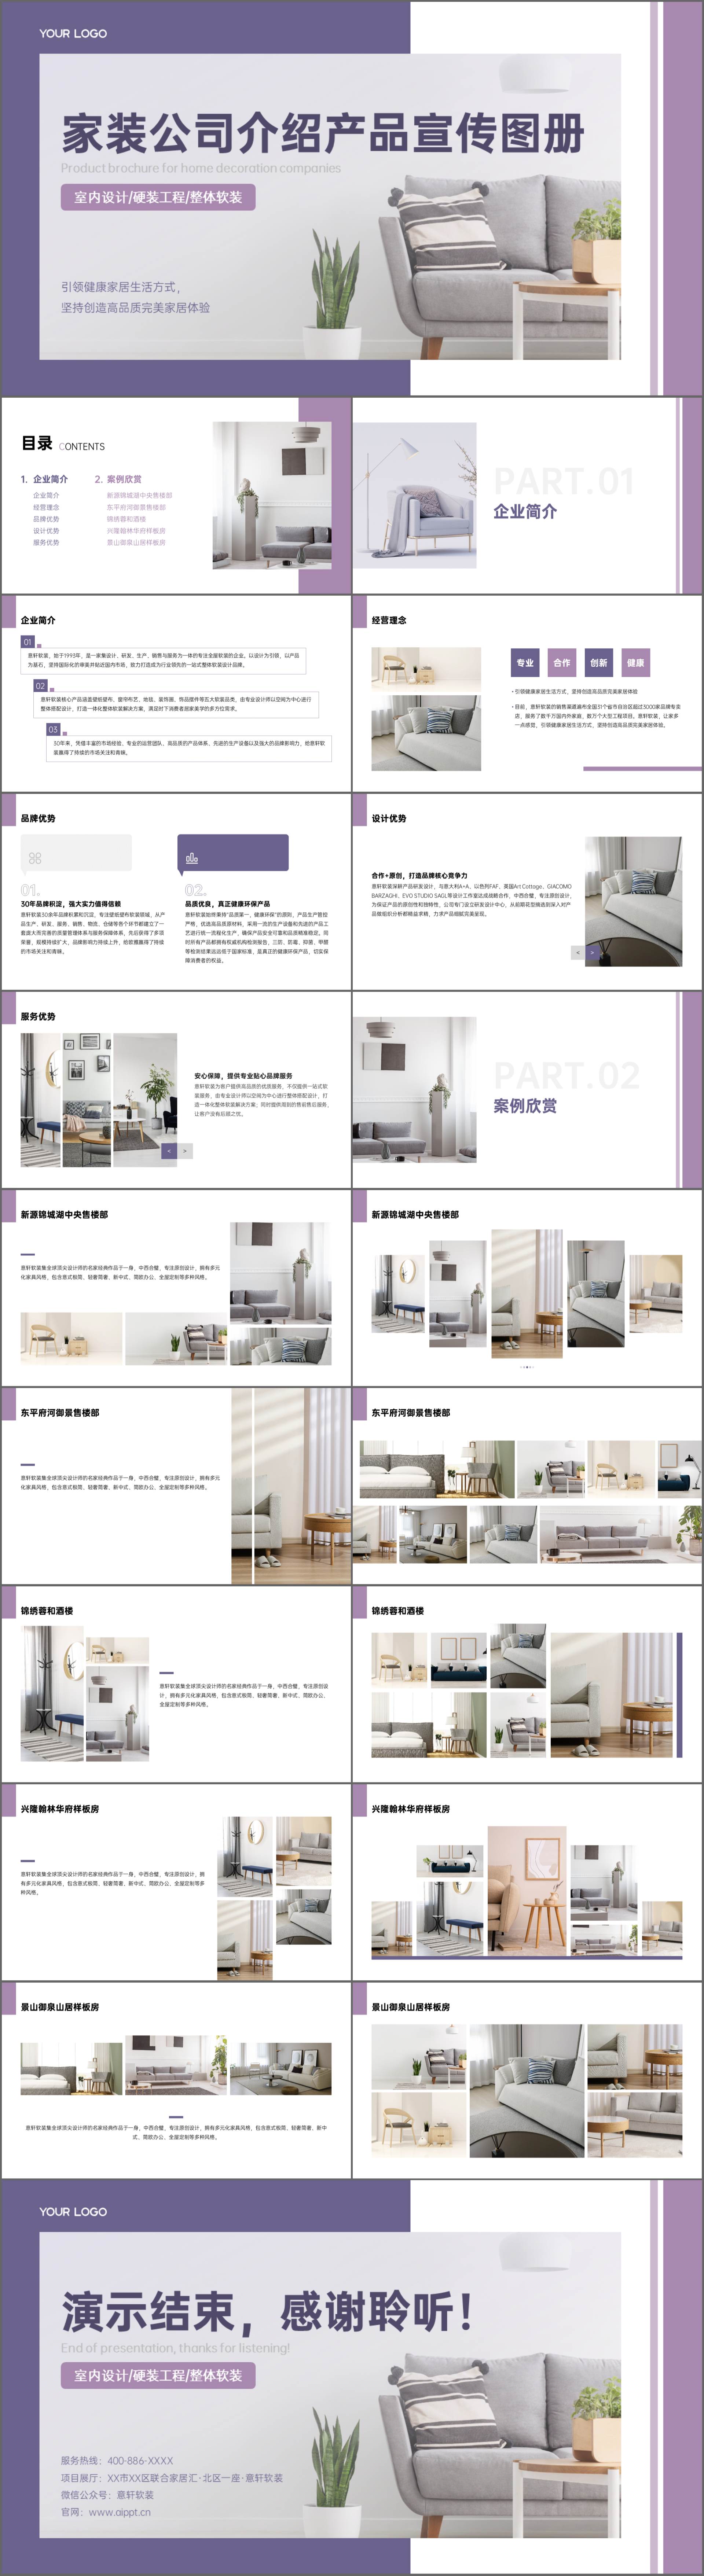 紫色家装公司介绍产品宣传图册PPT模板